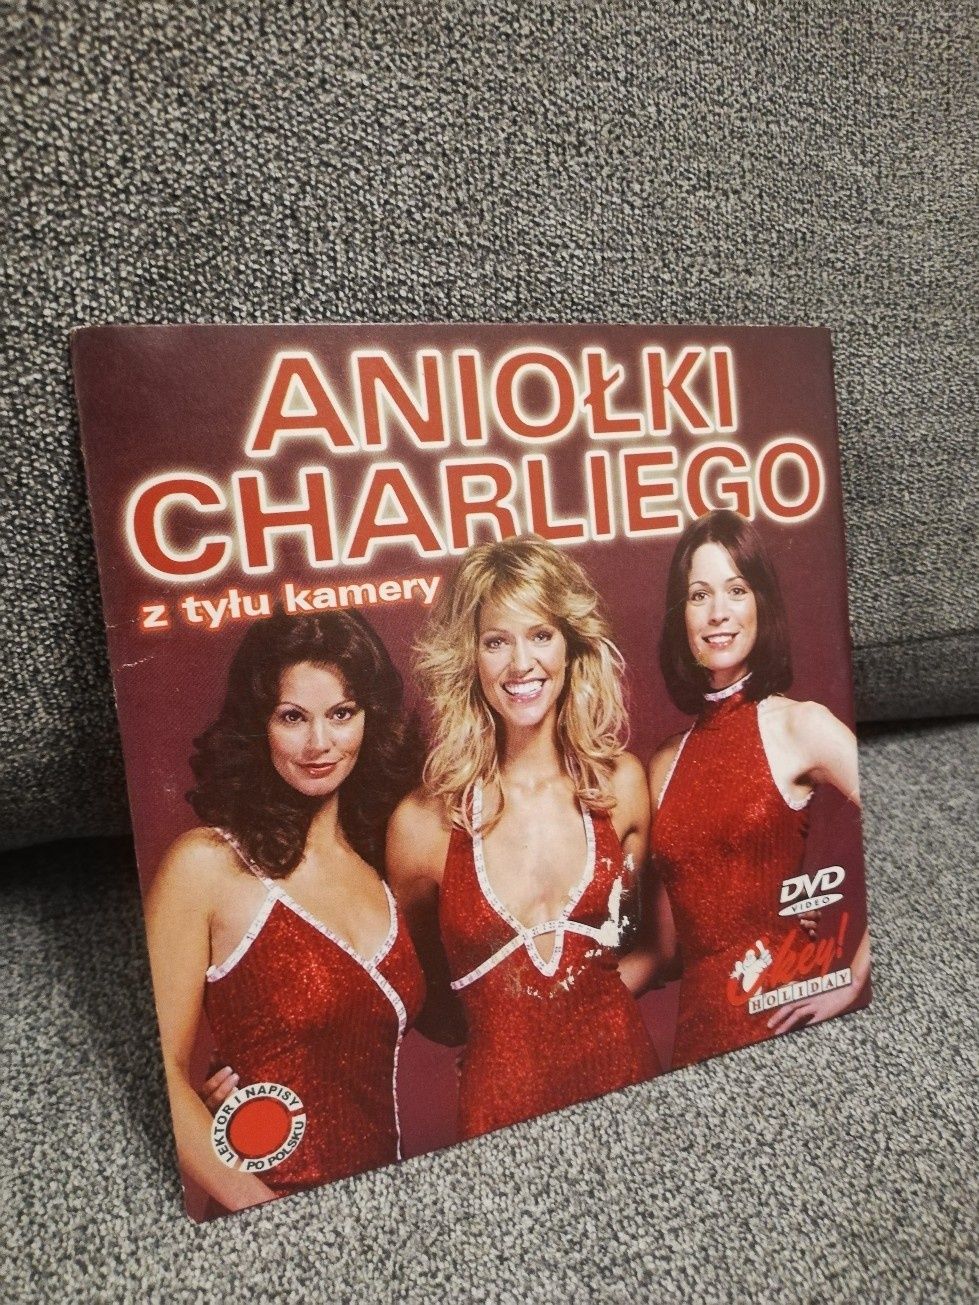 Aniołki Charliego z tylu kamery DVD wydanie kartonowe